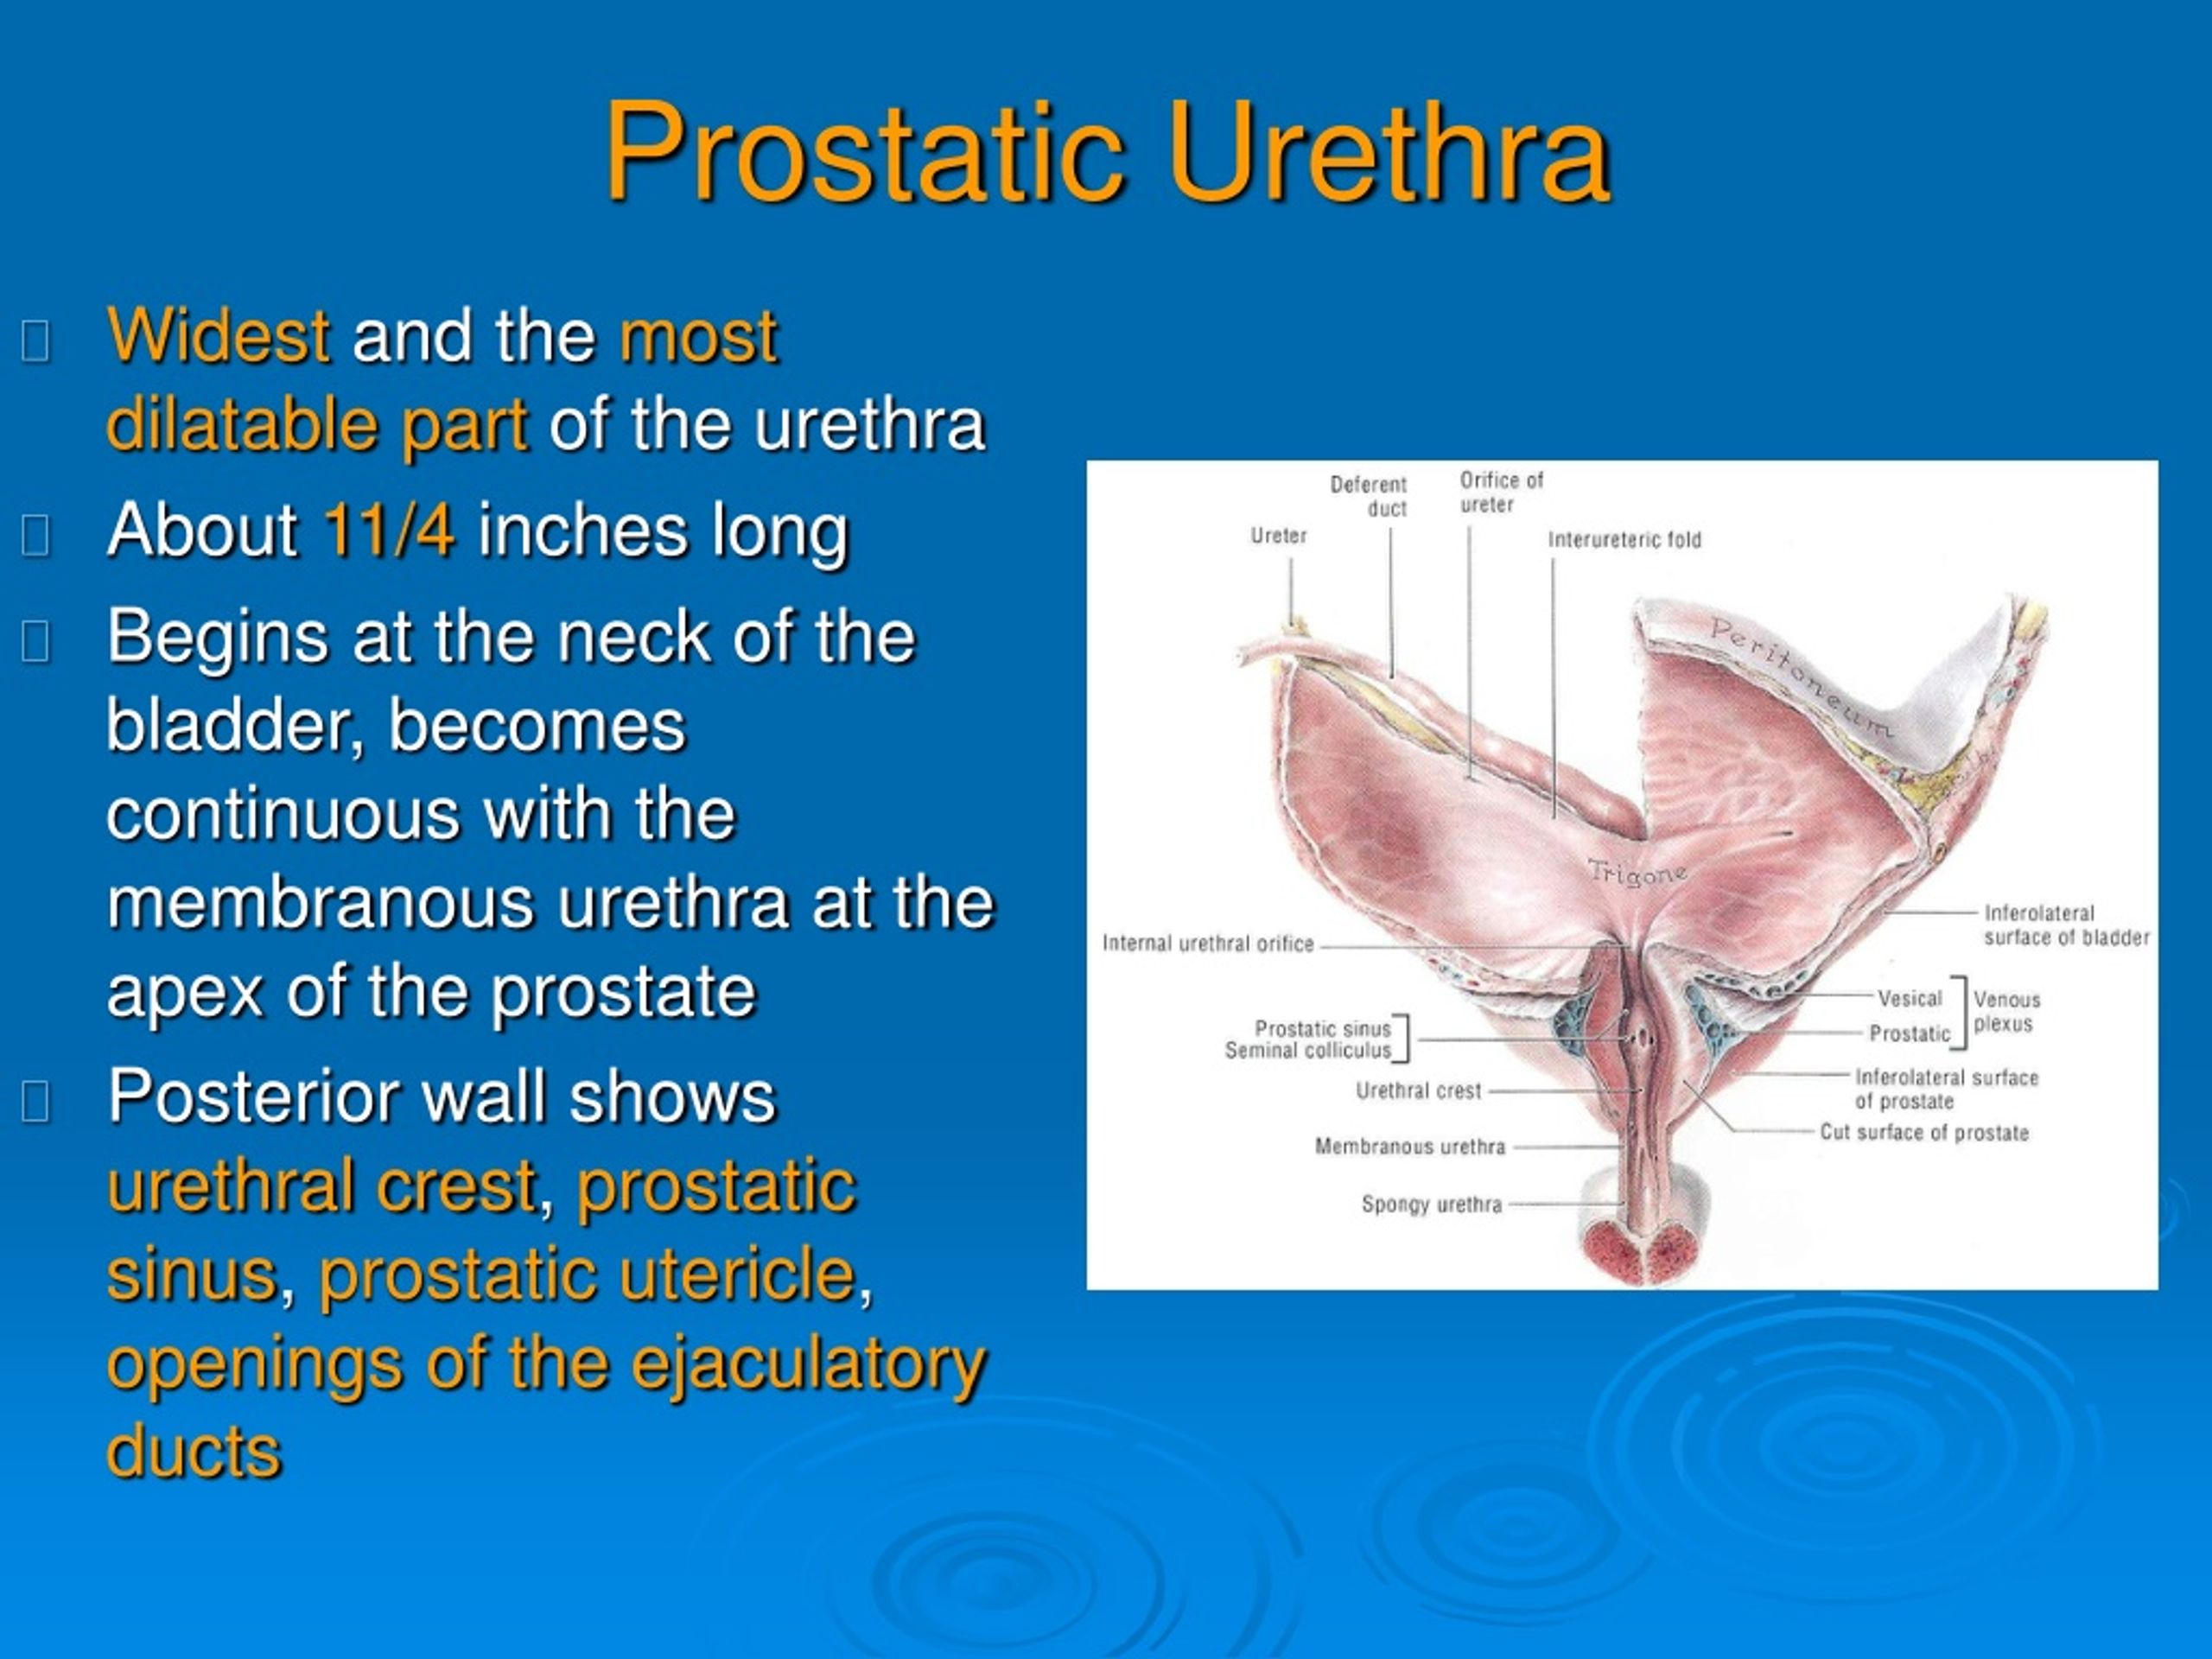 Prostata verhärtet was bedeutet das